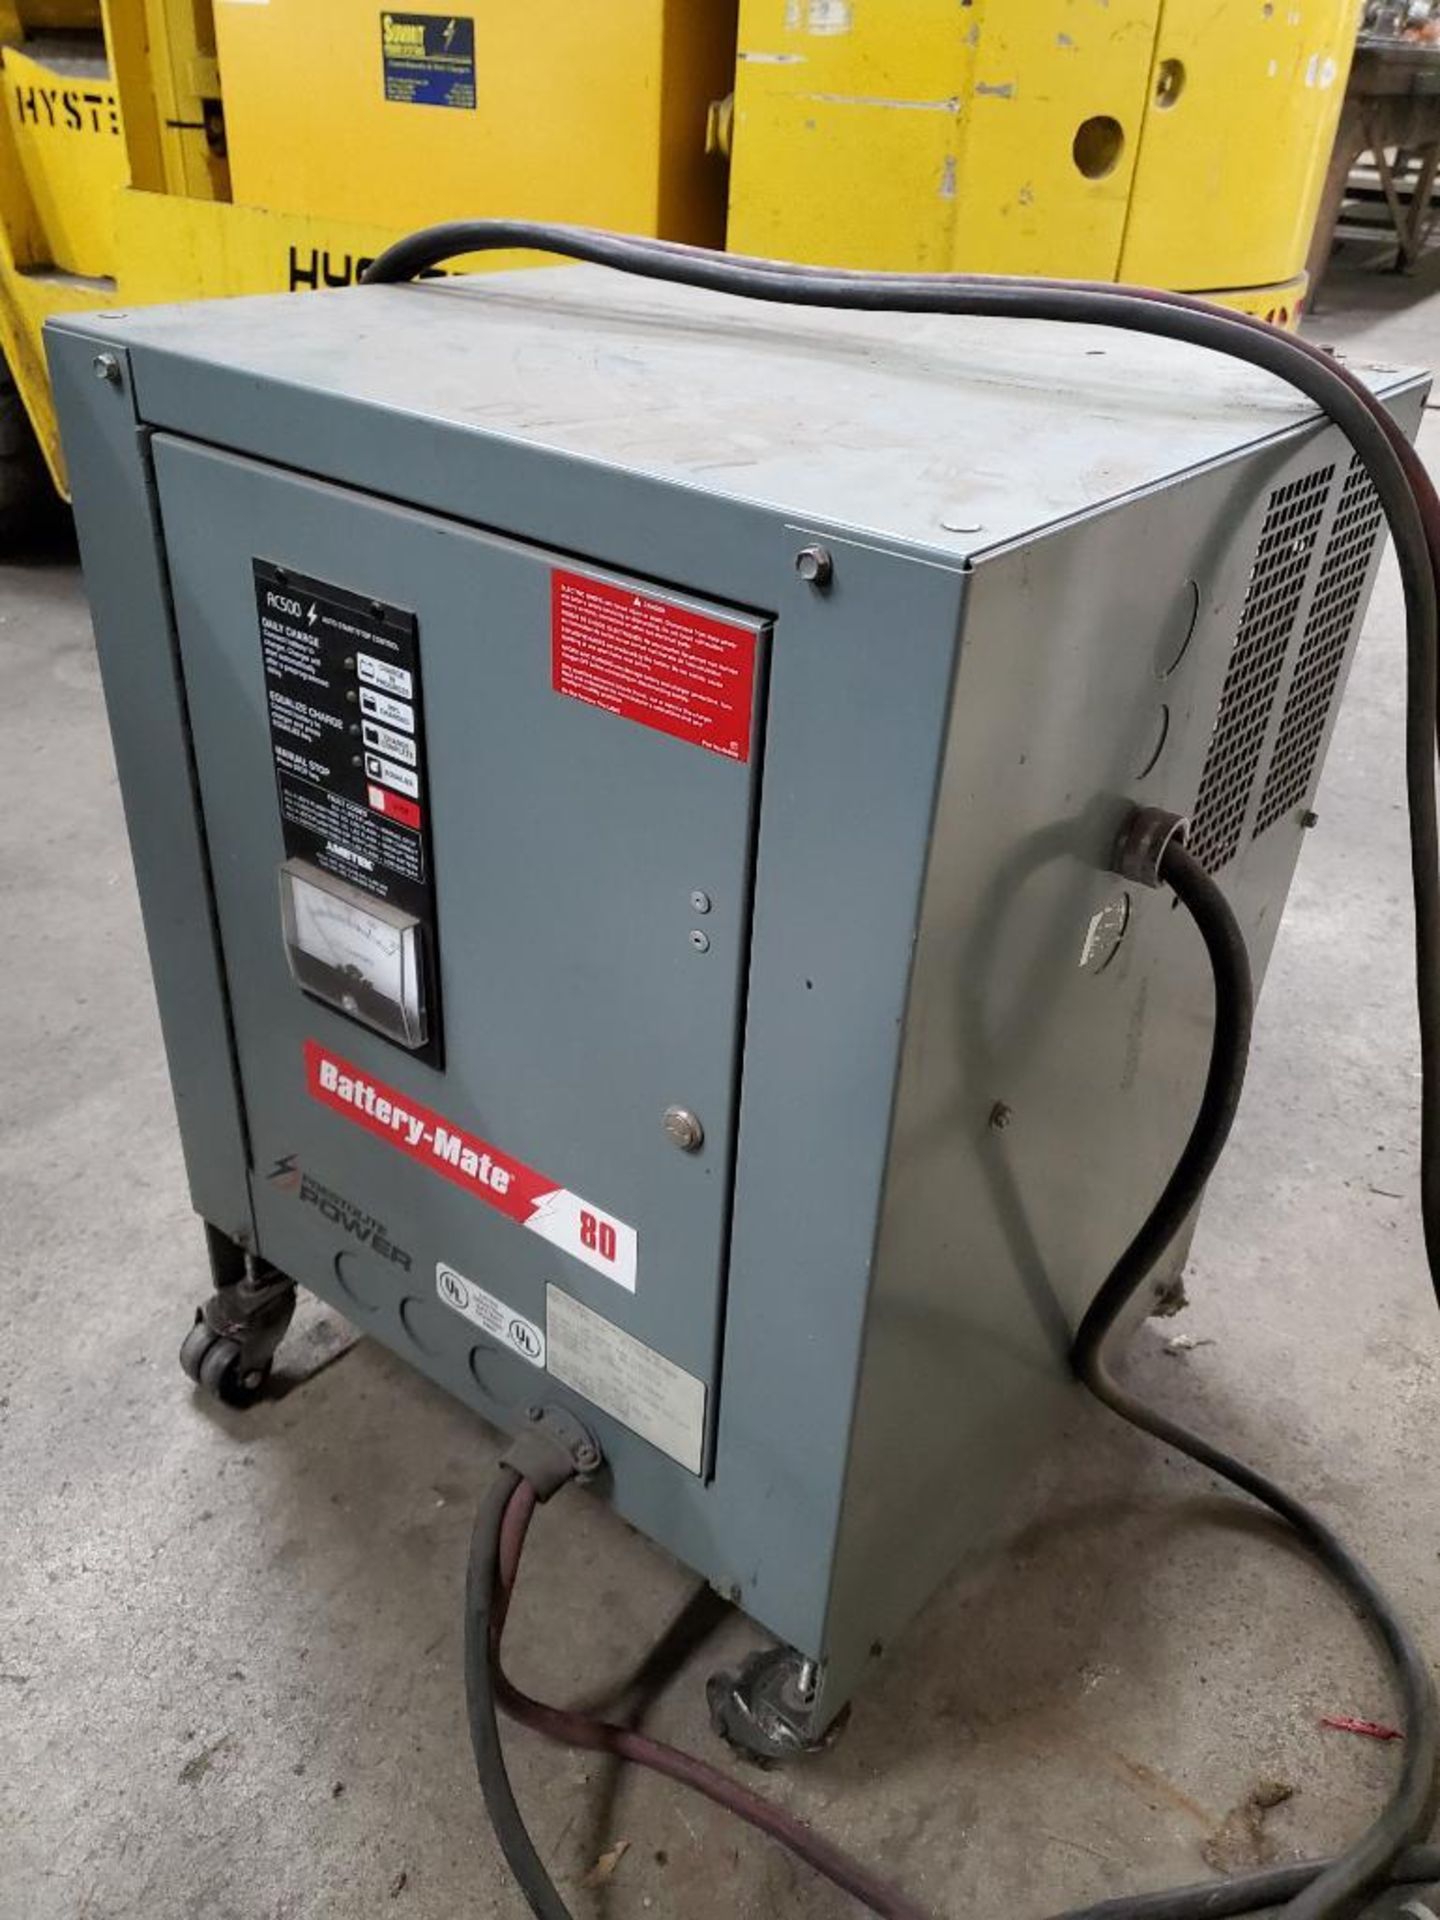 Prestolite Battery-Mate 80 36V Forklift Battery Charger (2-Week Delayed Removal) - Image 3 of 5